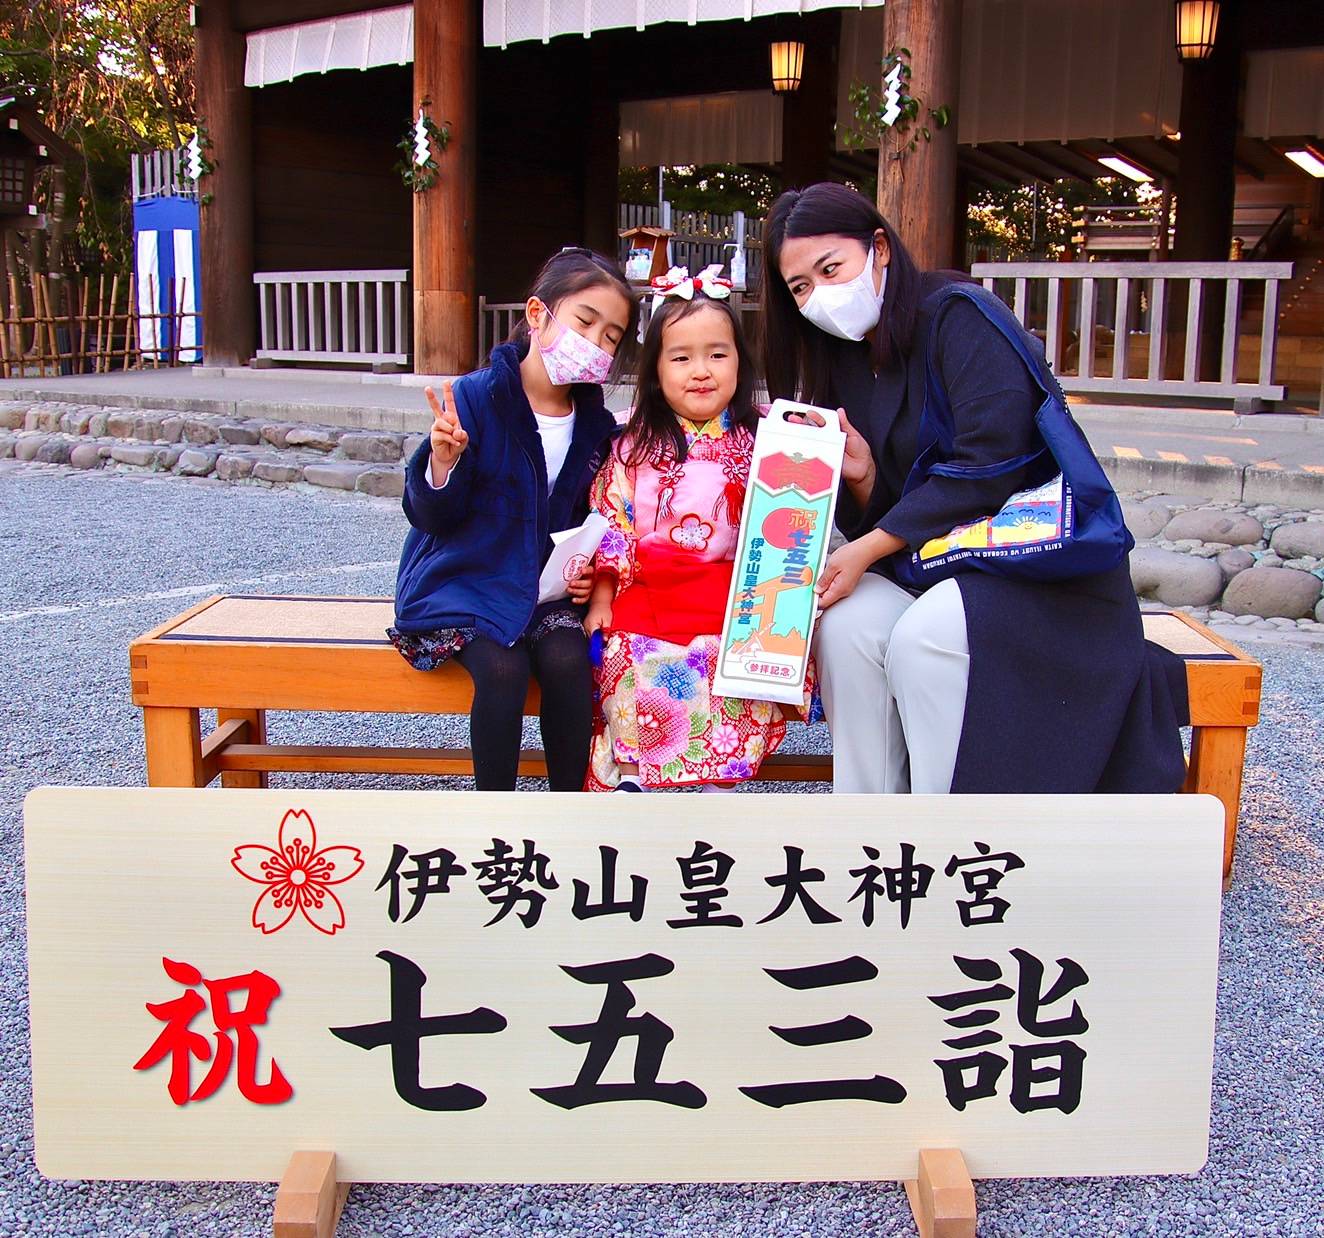 Japan Children Day